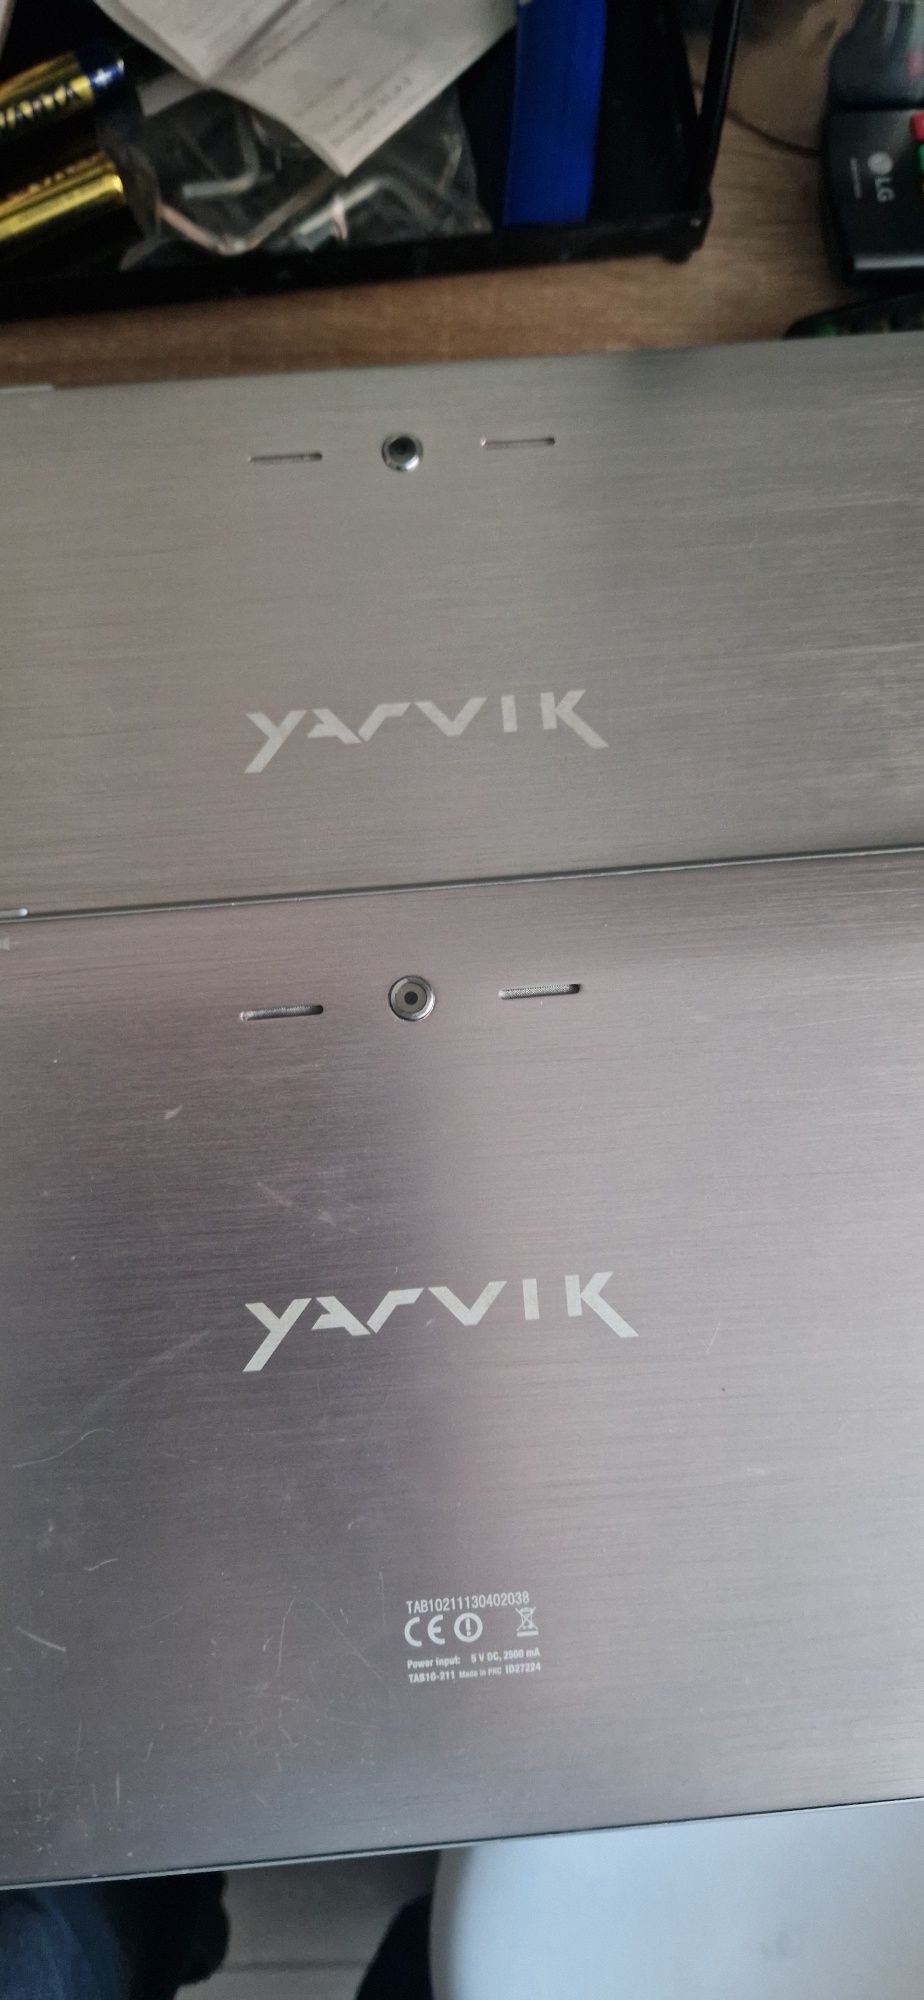 Tablet 10 Yarvik